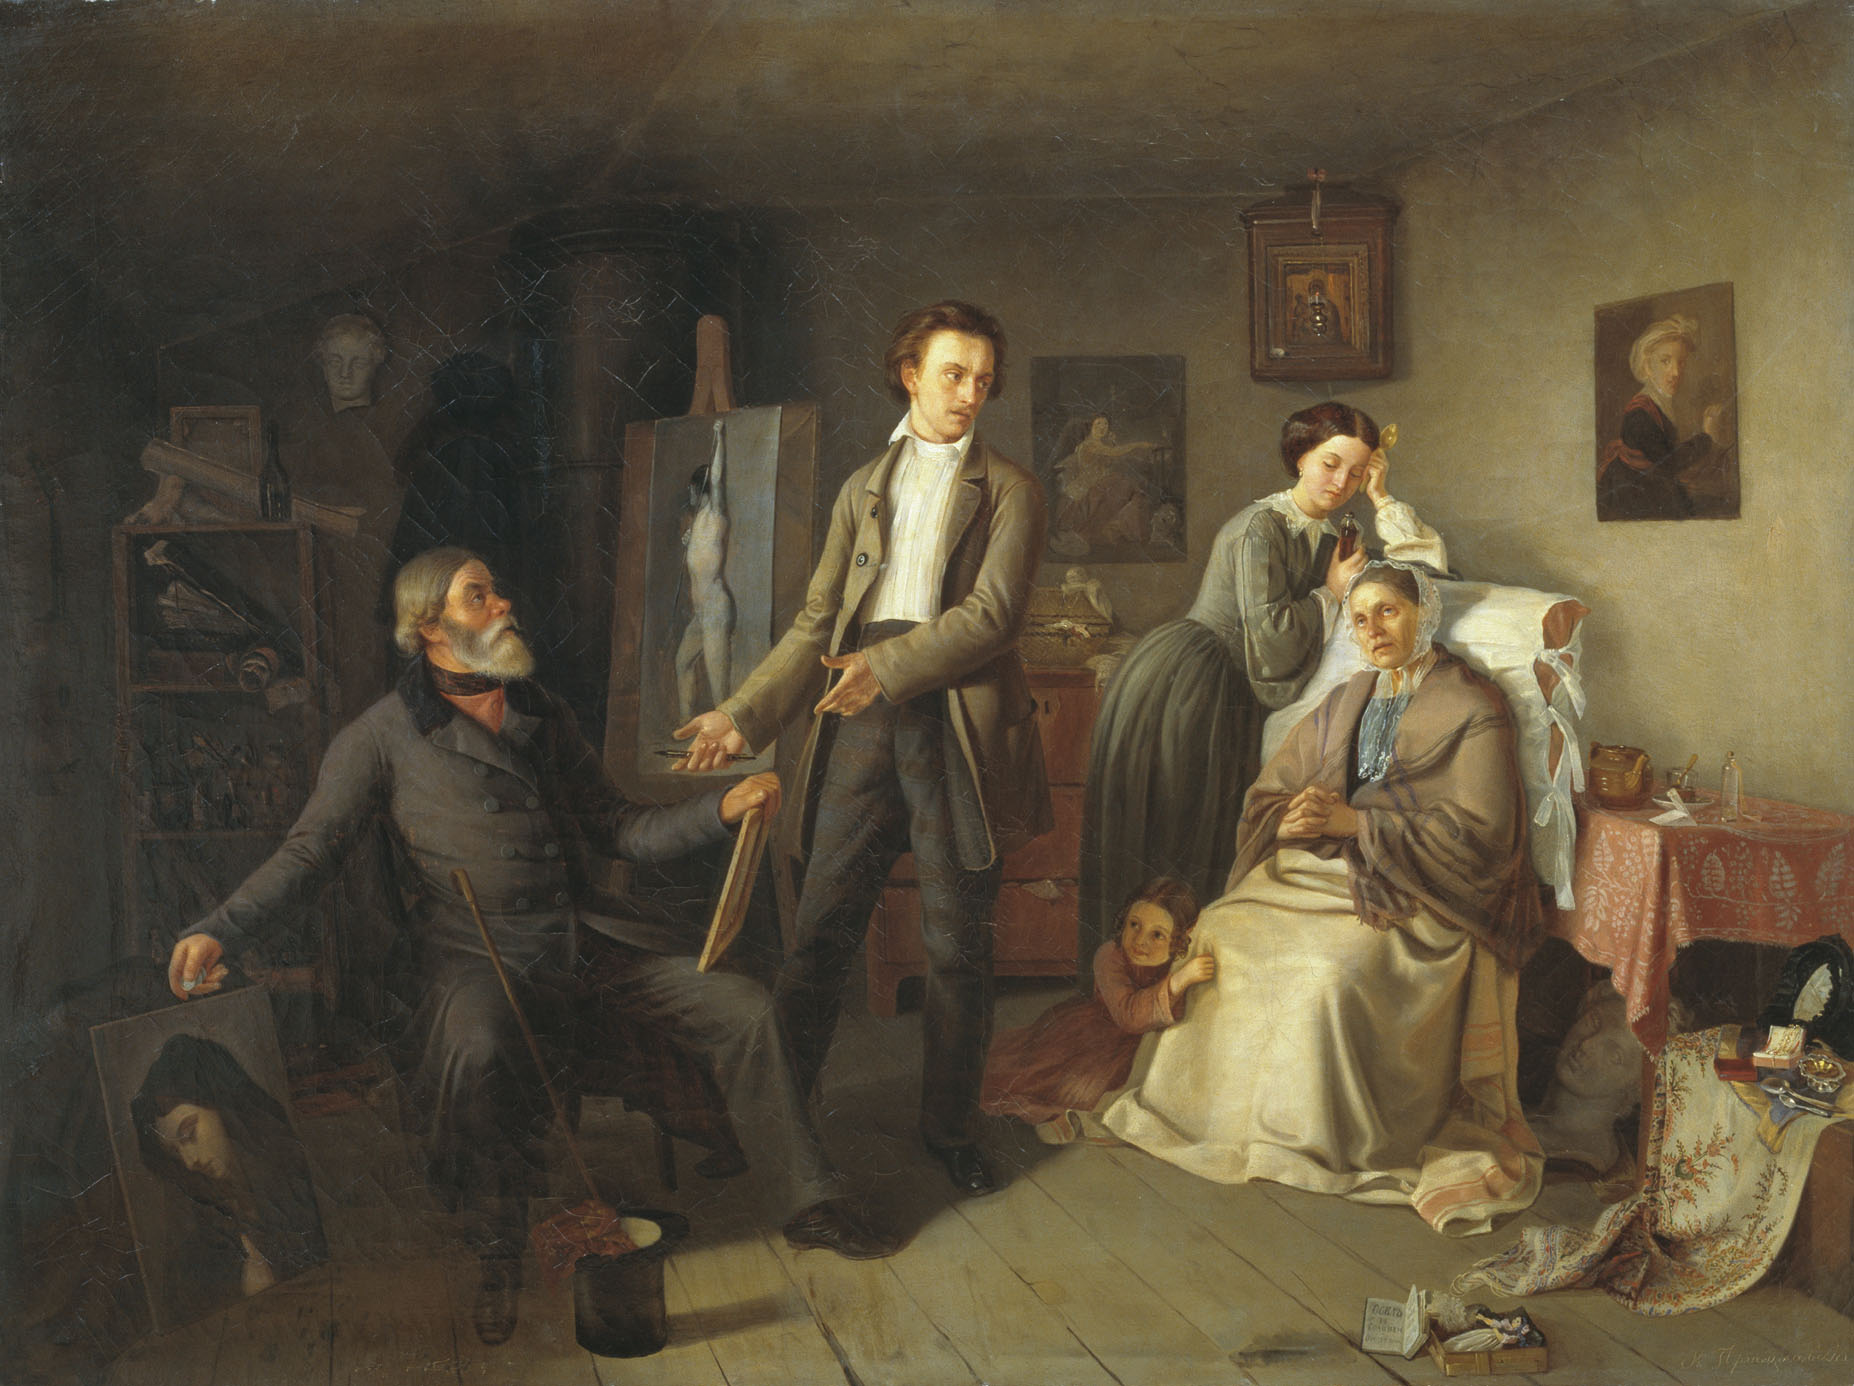 Пржецлавский. Семейство бедного художника и покупатель картин. 1857